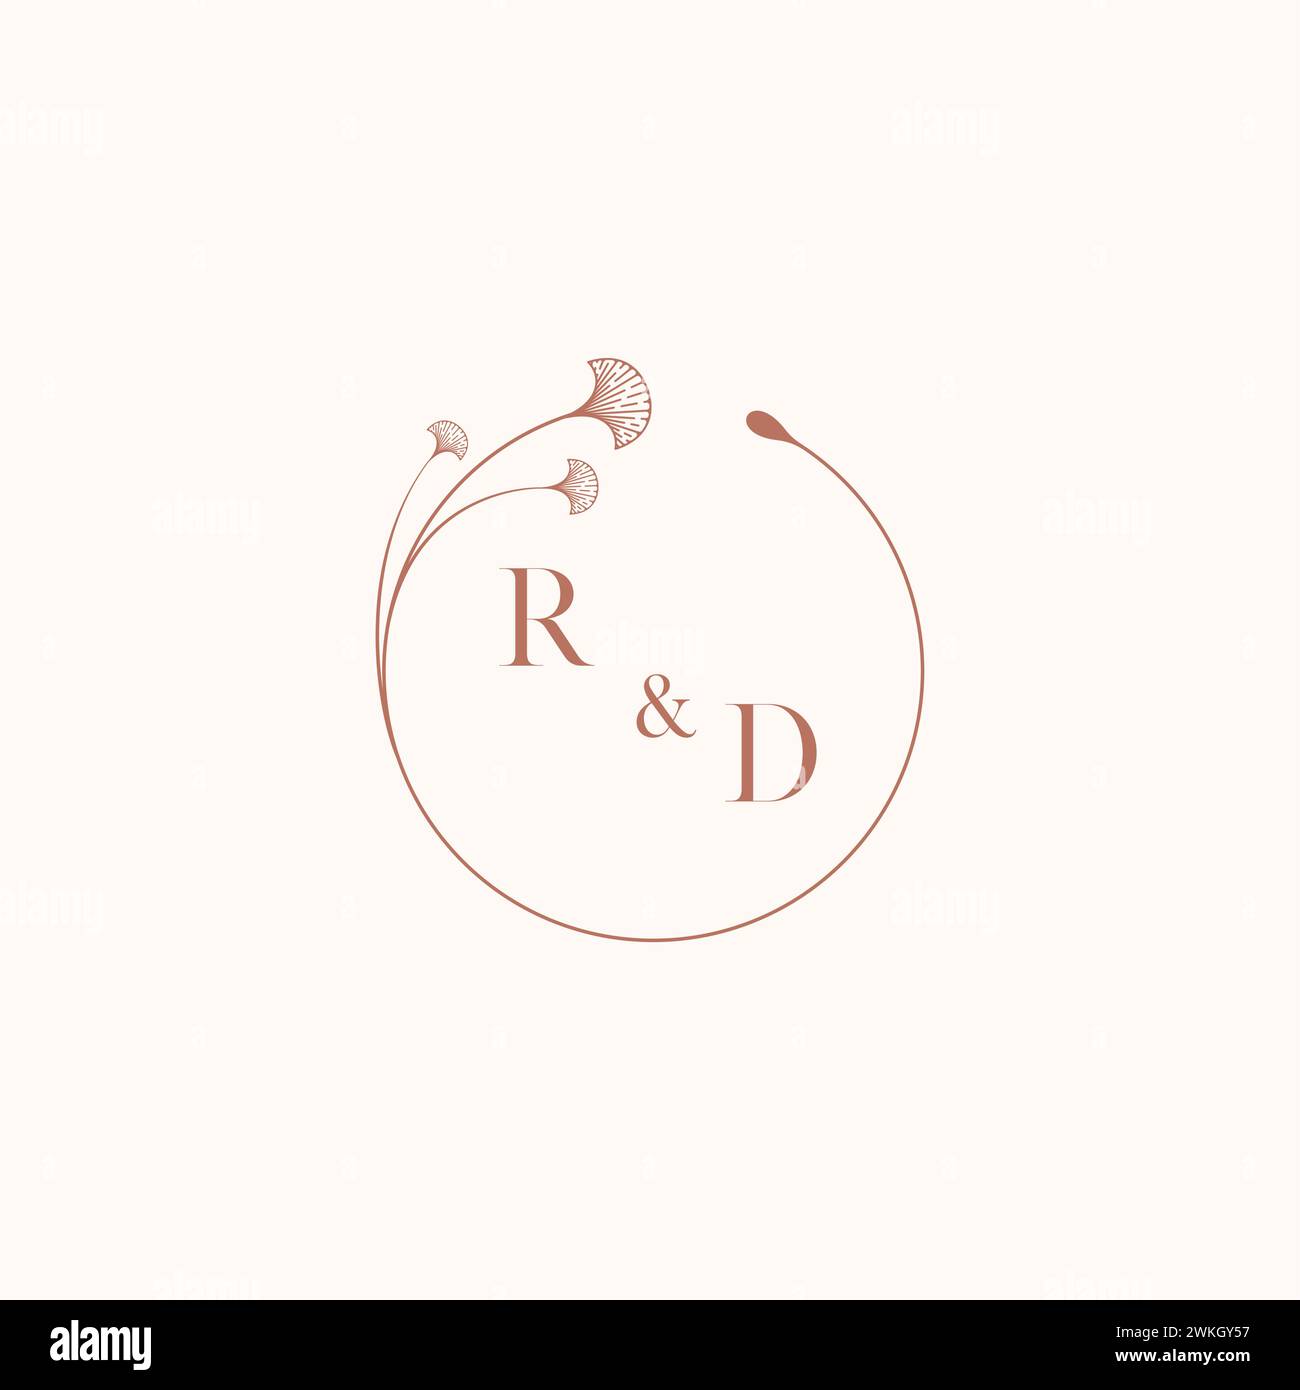 RD mariage monogramme logo designideas comme inspiration Illustration de Vecteur